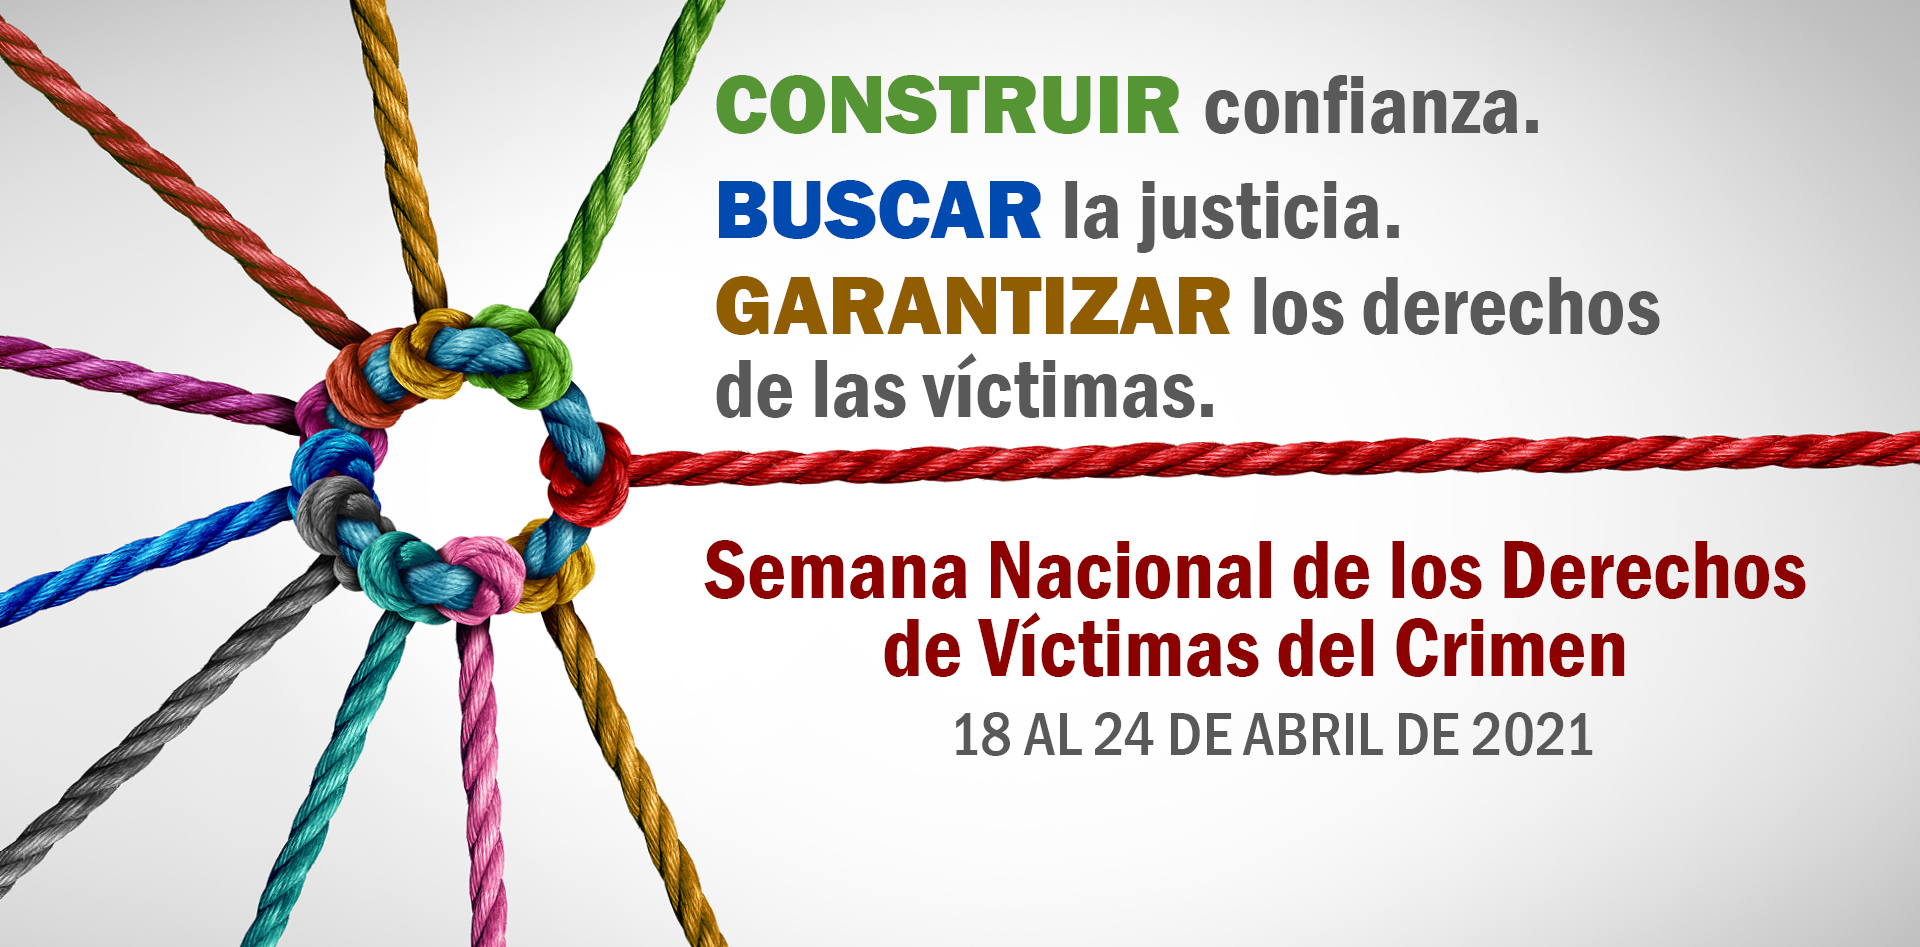 Semana Nacional de los Derechos de Víctimas del Crimen